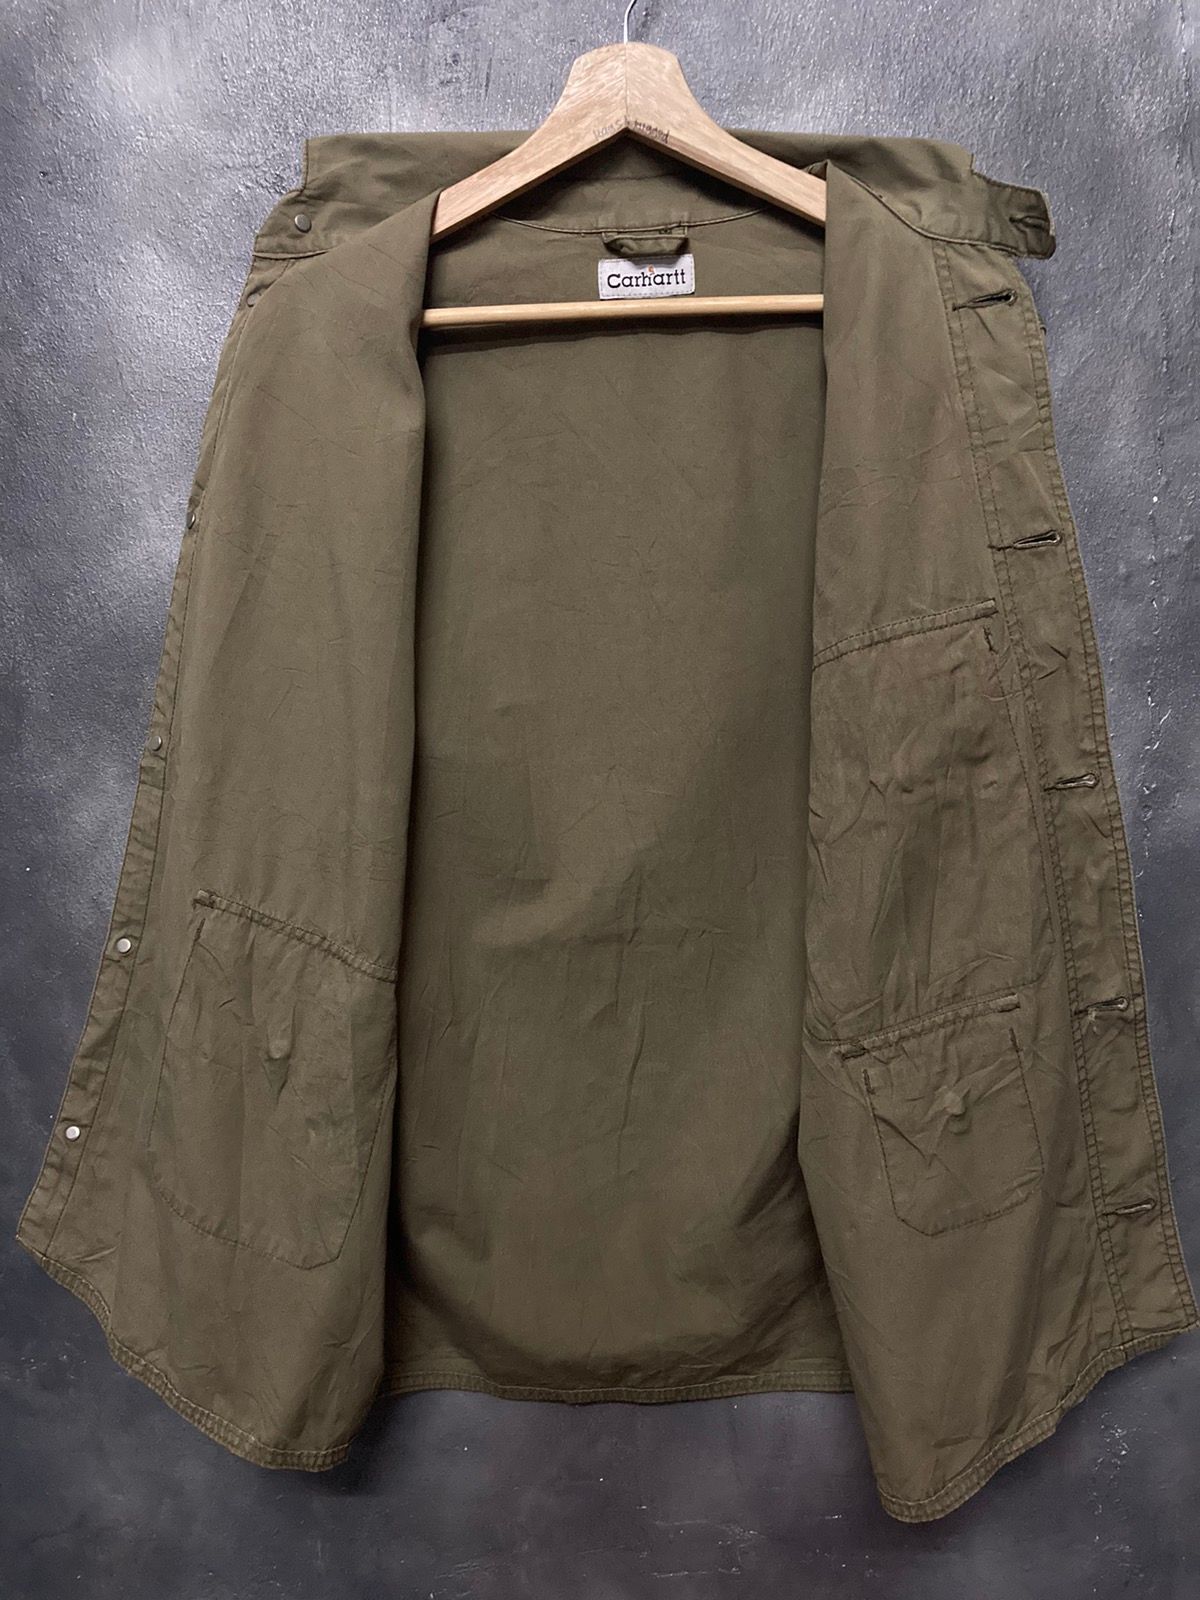 Carhartt Button Up Long Sleeve Shirt - 3